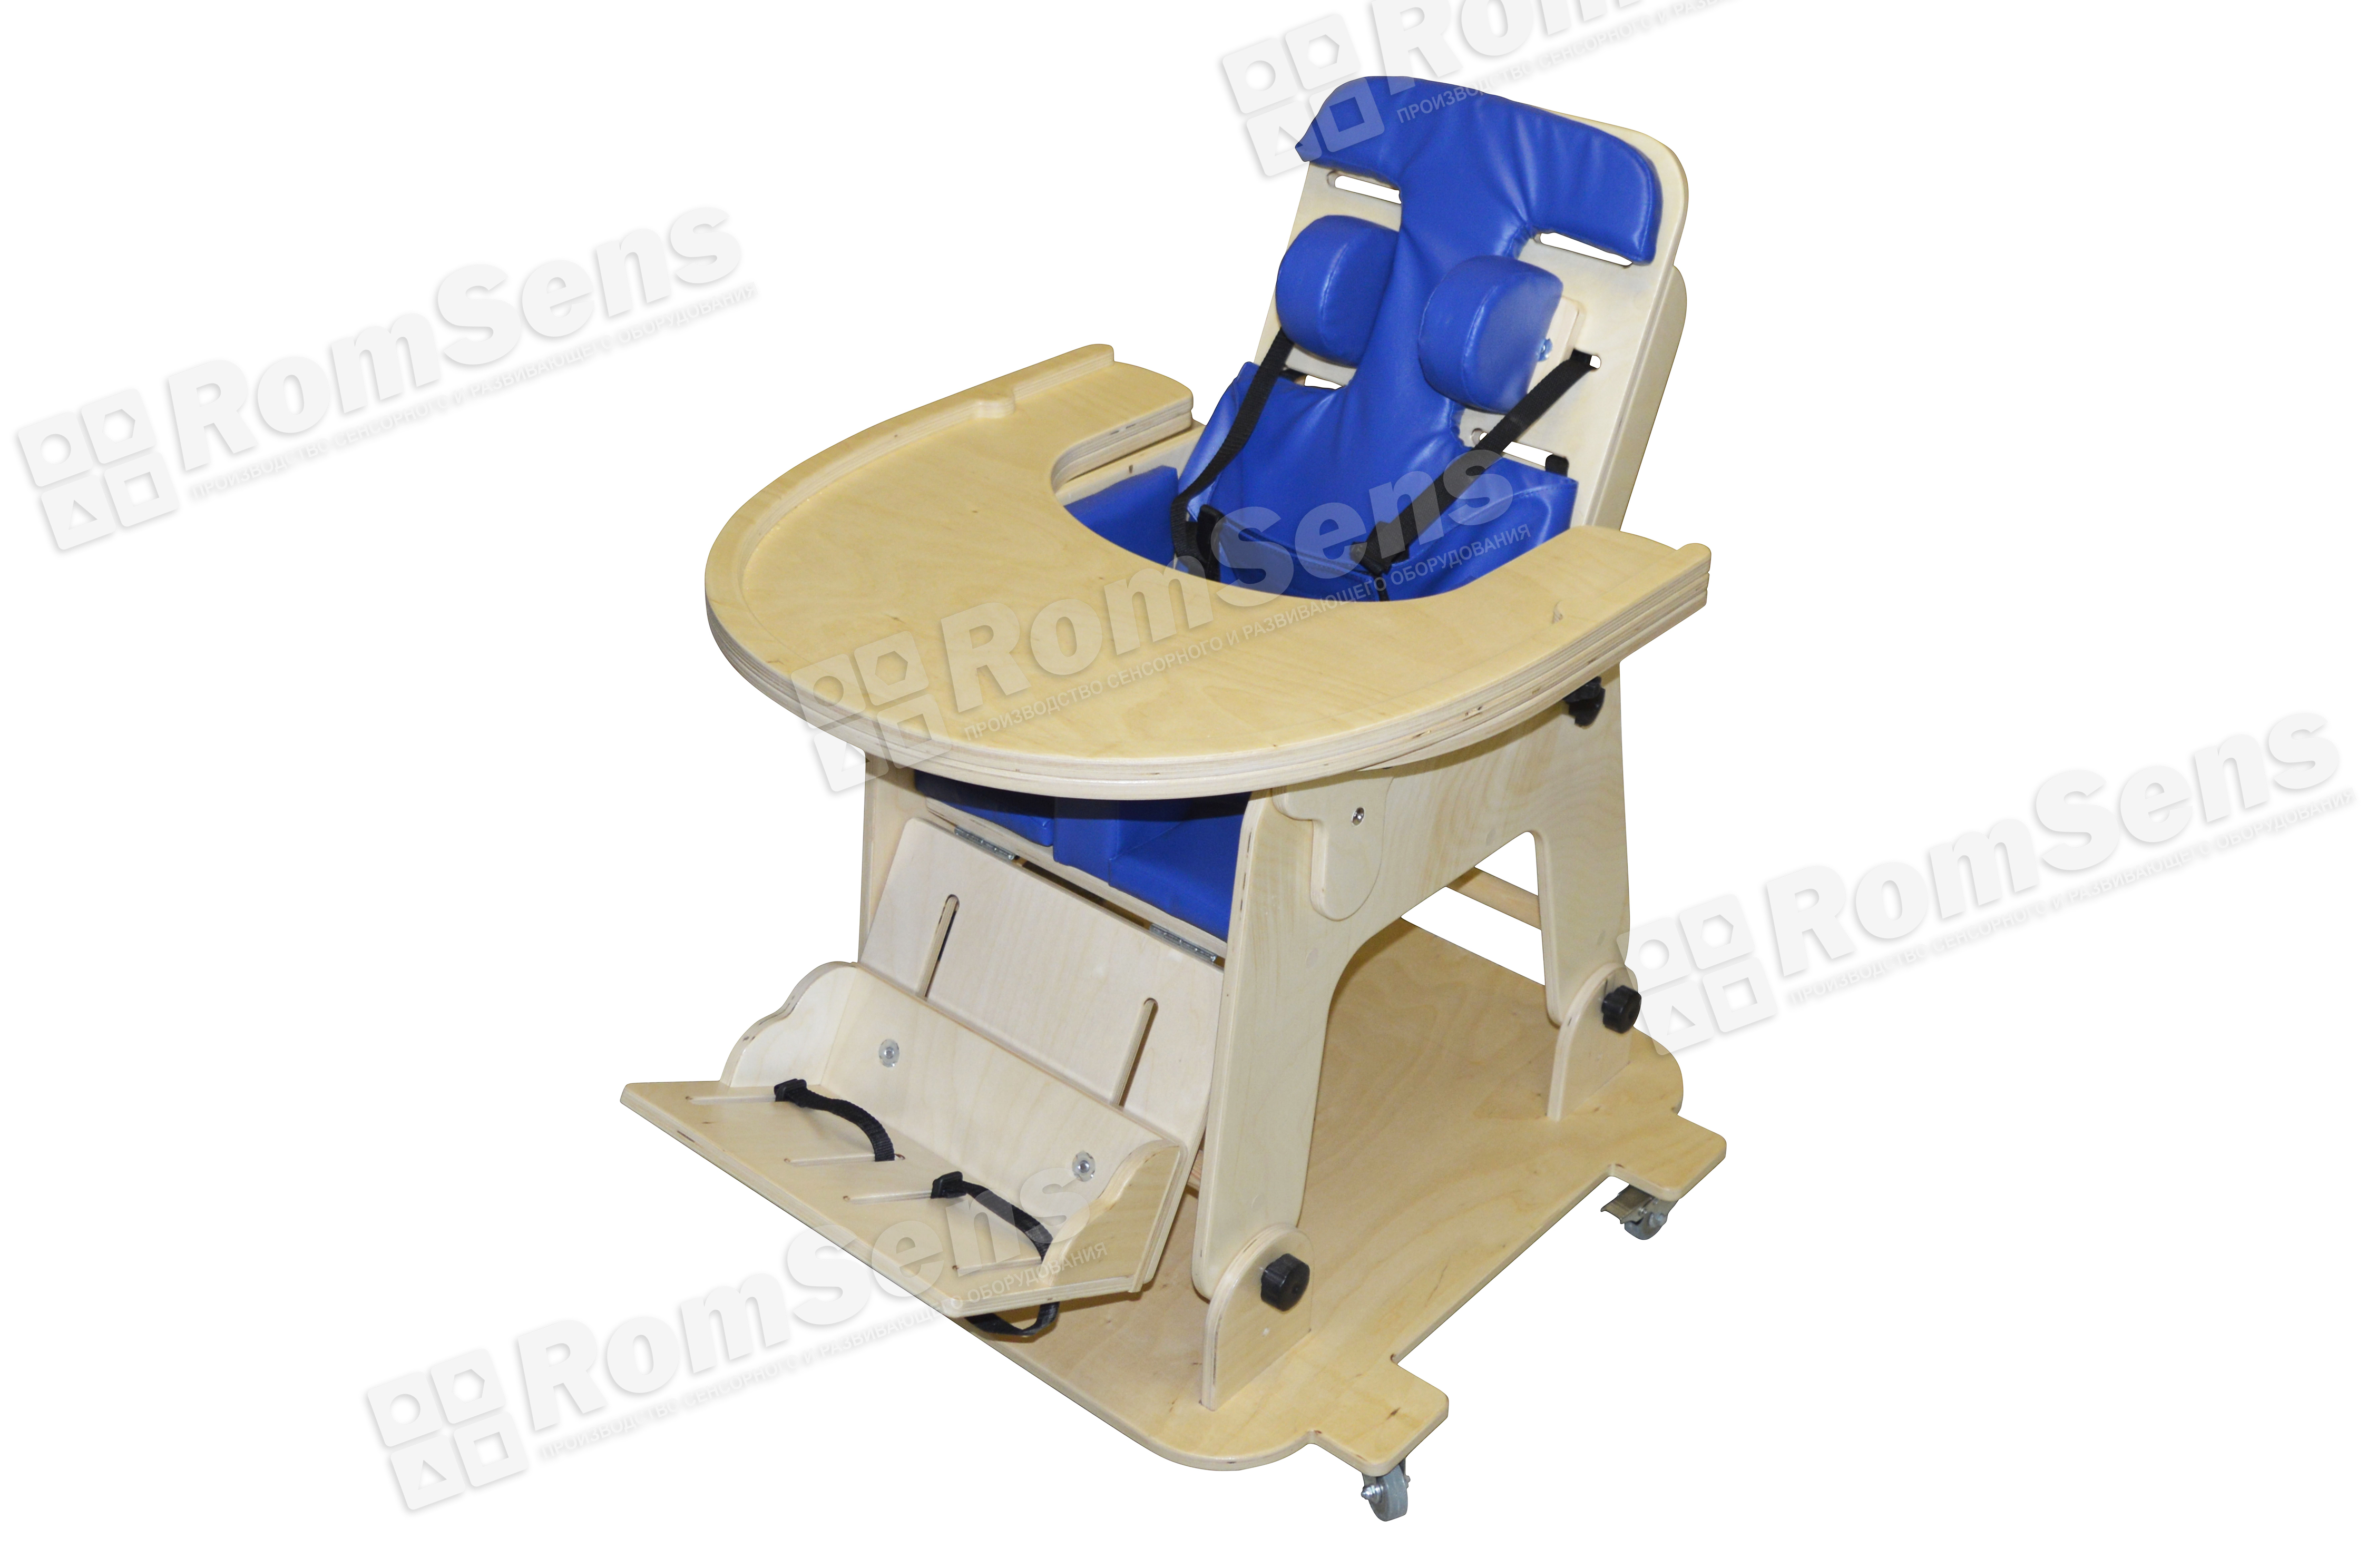 Функциональное кресло для детей с ОВЗ (платформа на колесиках и столешница входит в комплект) RG149